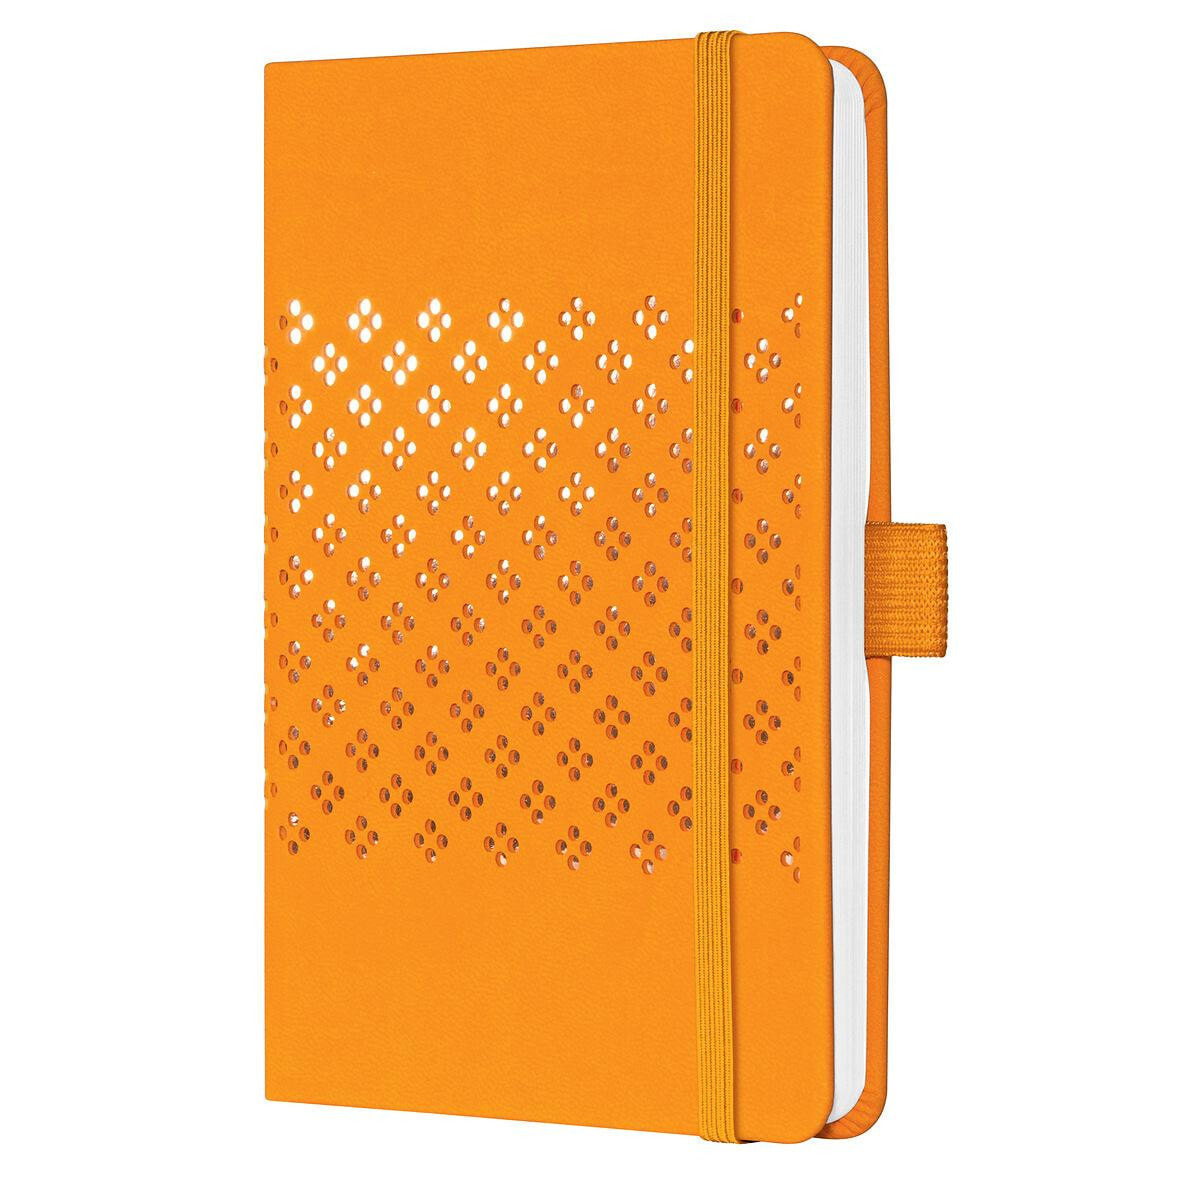 Sigel Jolie JN210 - Pattern - Orange - A6 - 174 sheets - 80 g/m² - Hardcover